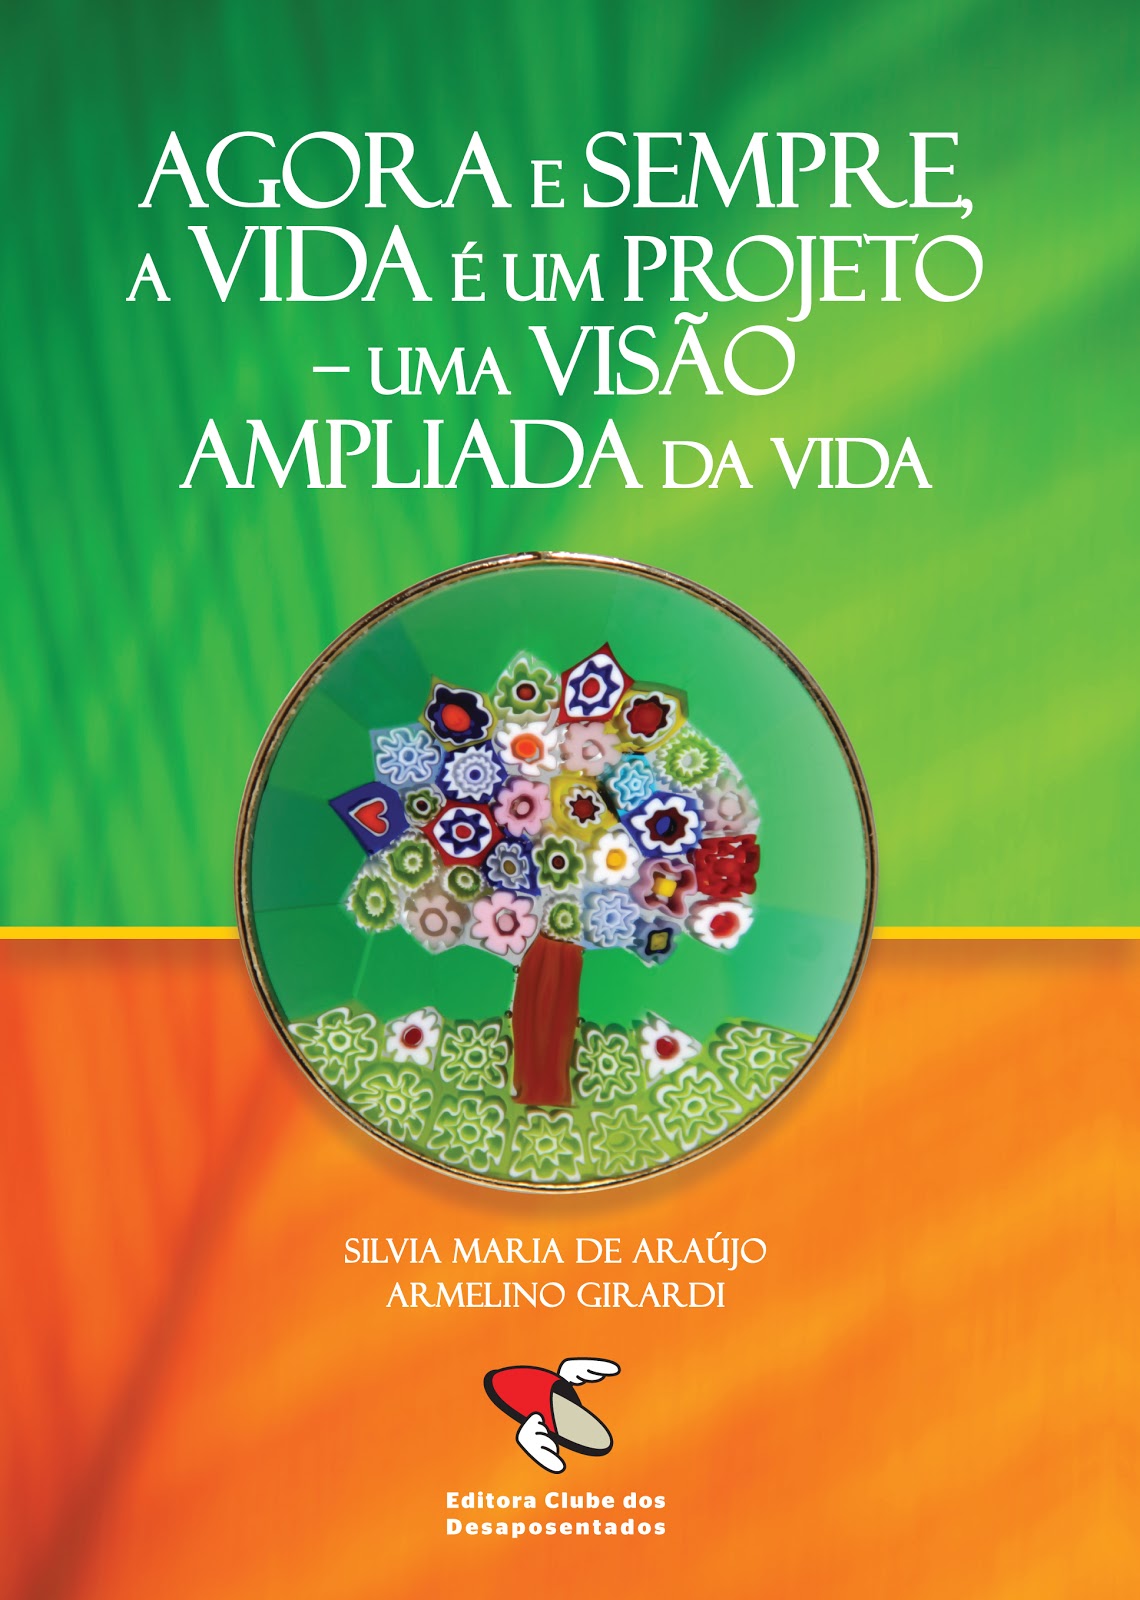 Beatriz de Abreu Fiuza Gomes - Revista Brasileira de Oftalmologia